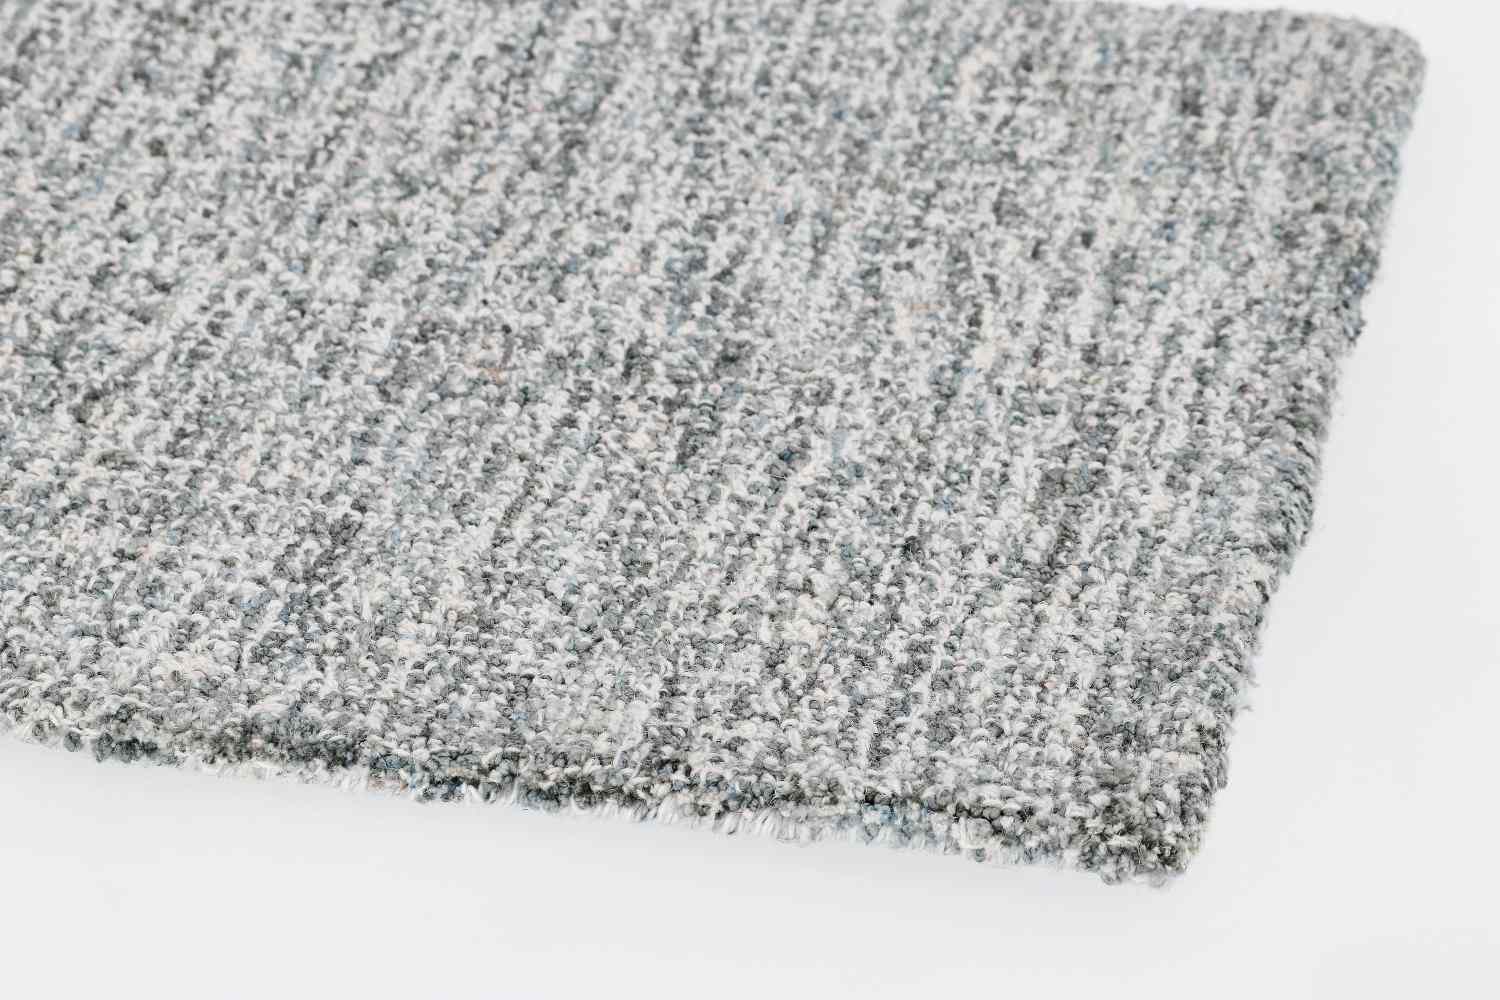 Der Teppich Hansi überzeugt mit seinem klassischen Design. Gefertigt wurde die Vorderseite aus 70% Polyester und 30% Wolle, die Rückseite ist aus Baumwolle. Der Teppich besitzt eine grauen Farbton und die Maße von 140x200 cm.